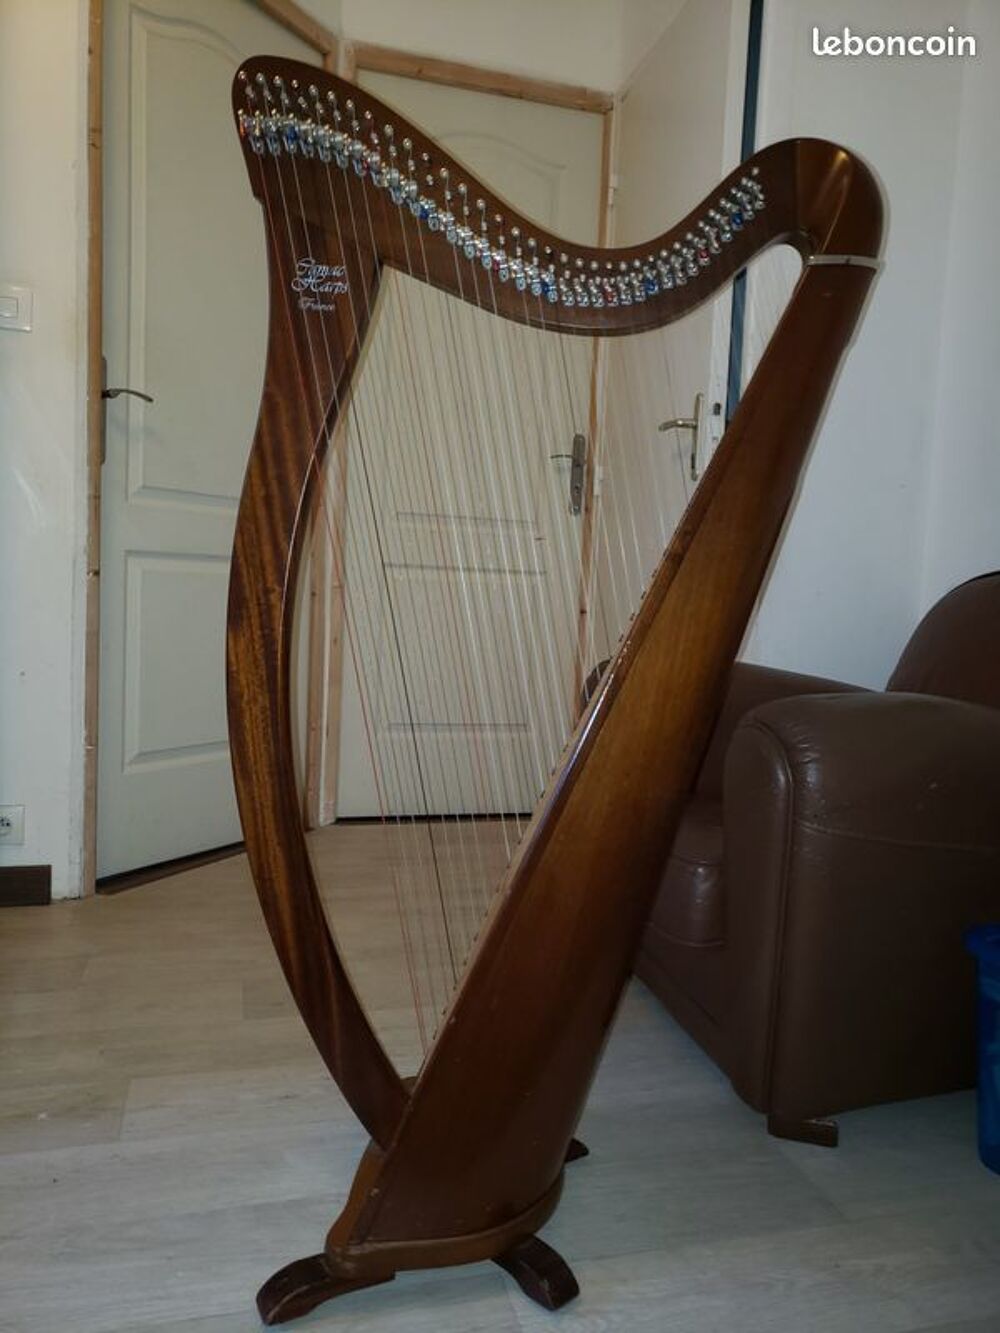 Harpe celtique Camac Hermine 38 cordes Instruments de musique